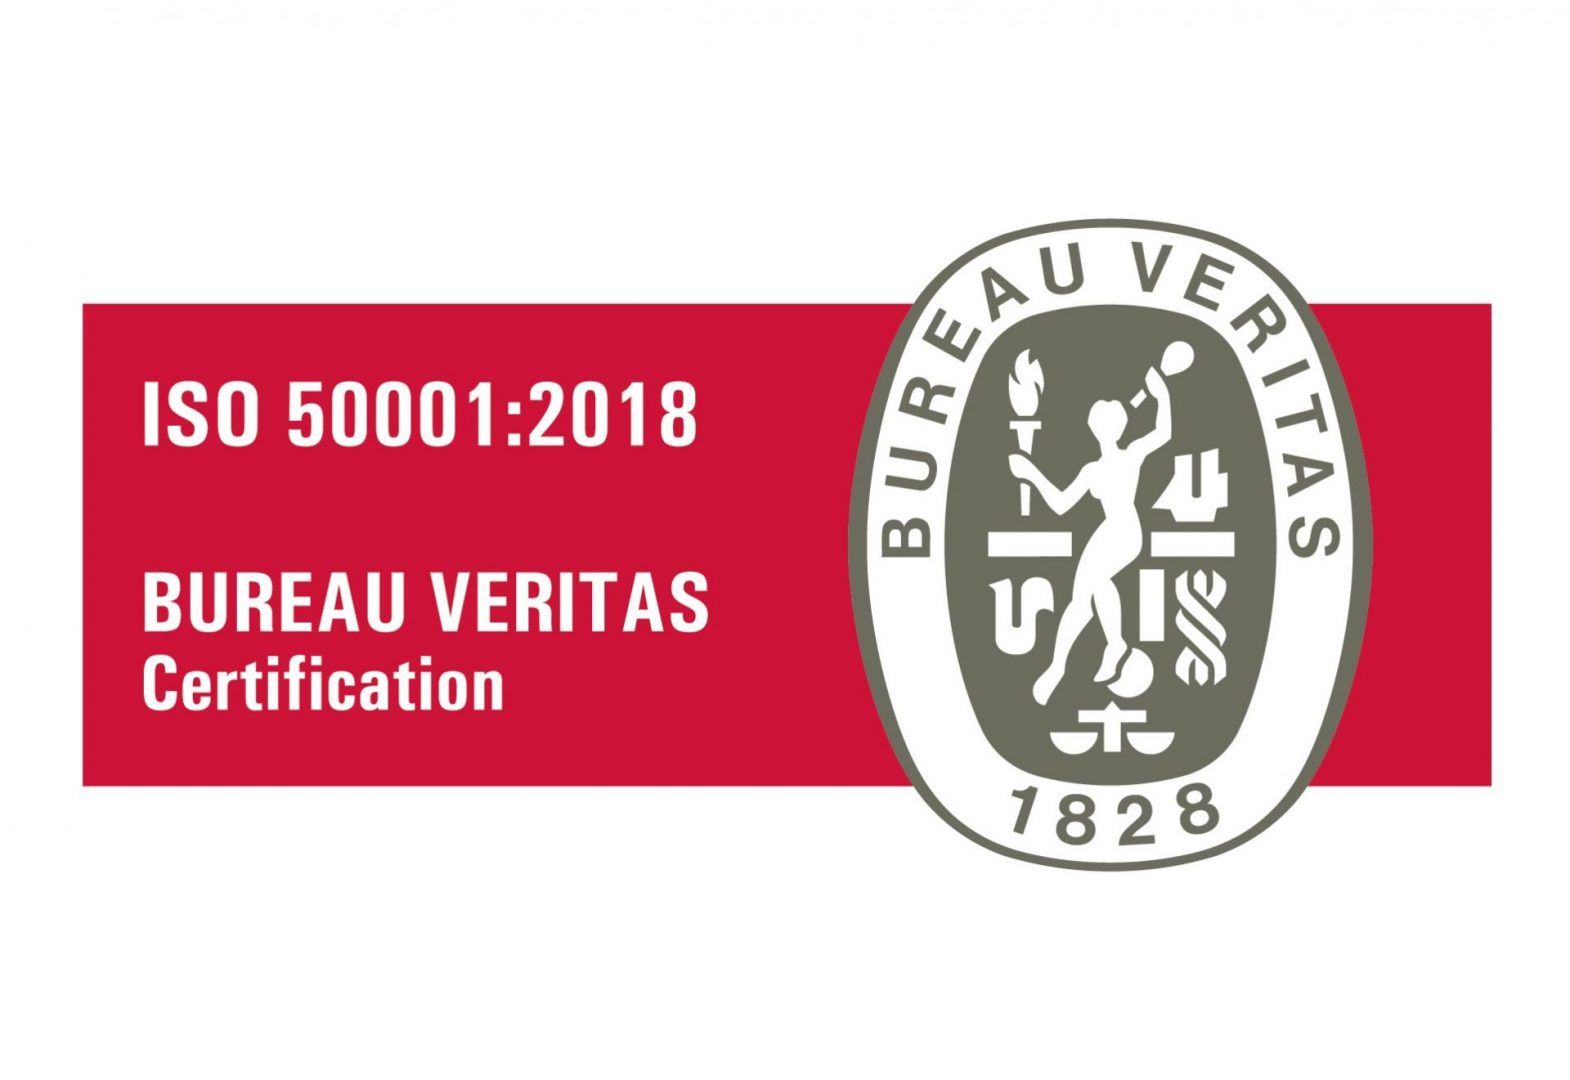 The ISO 50001 certificate has been renewed